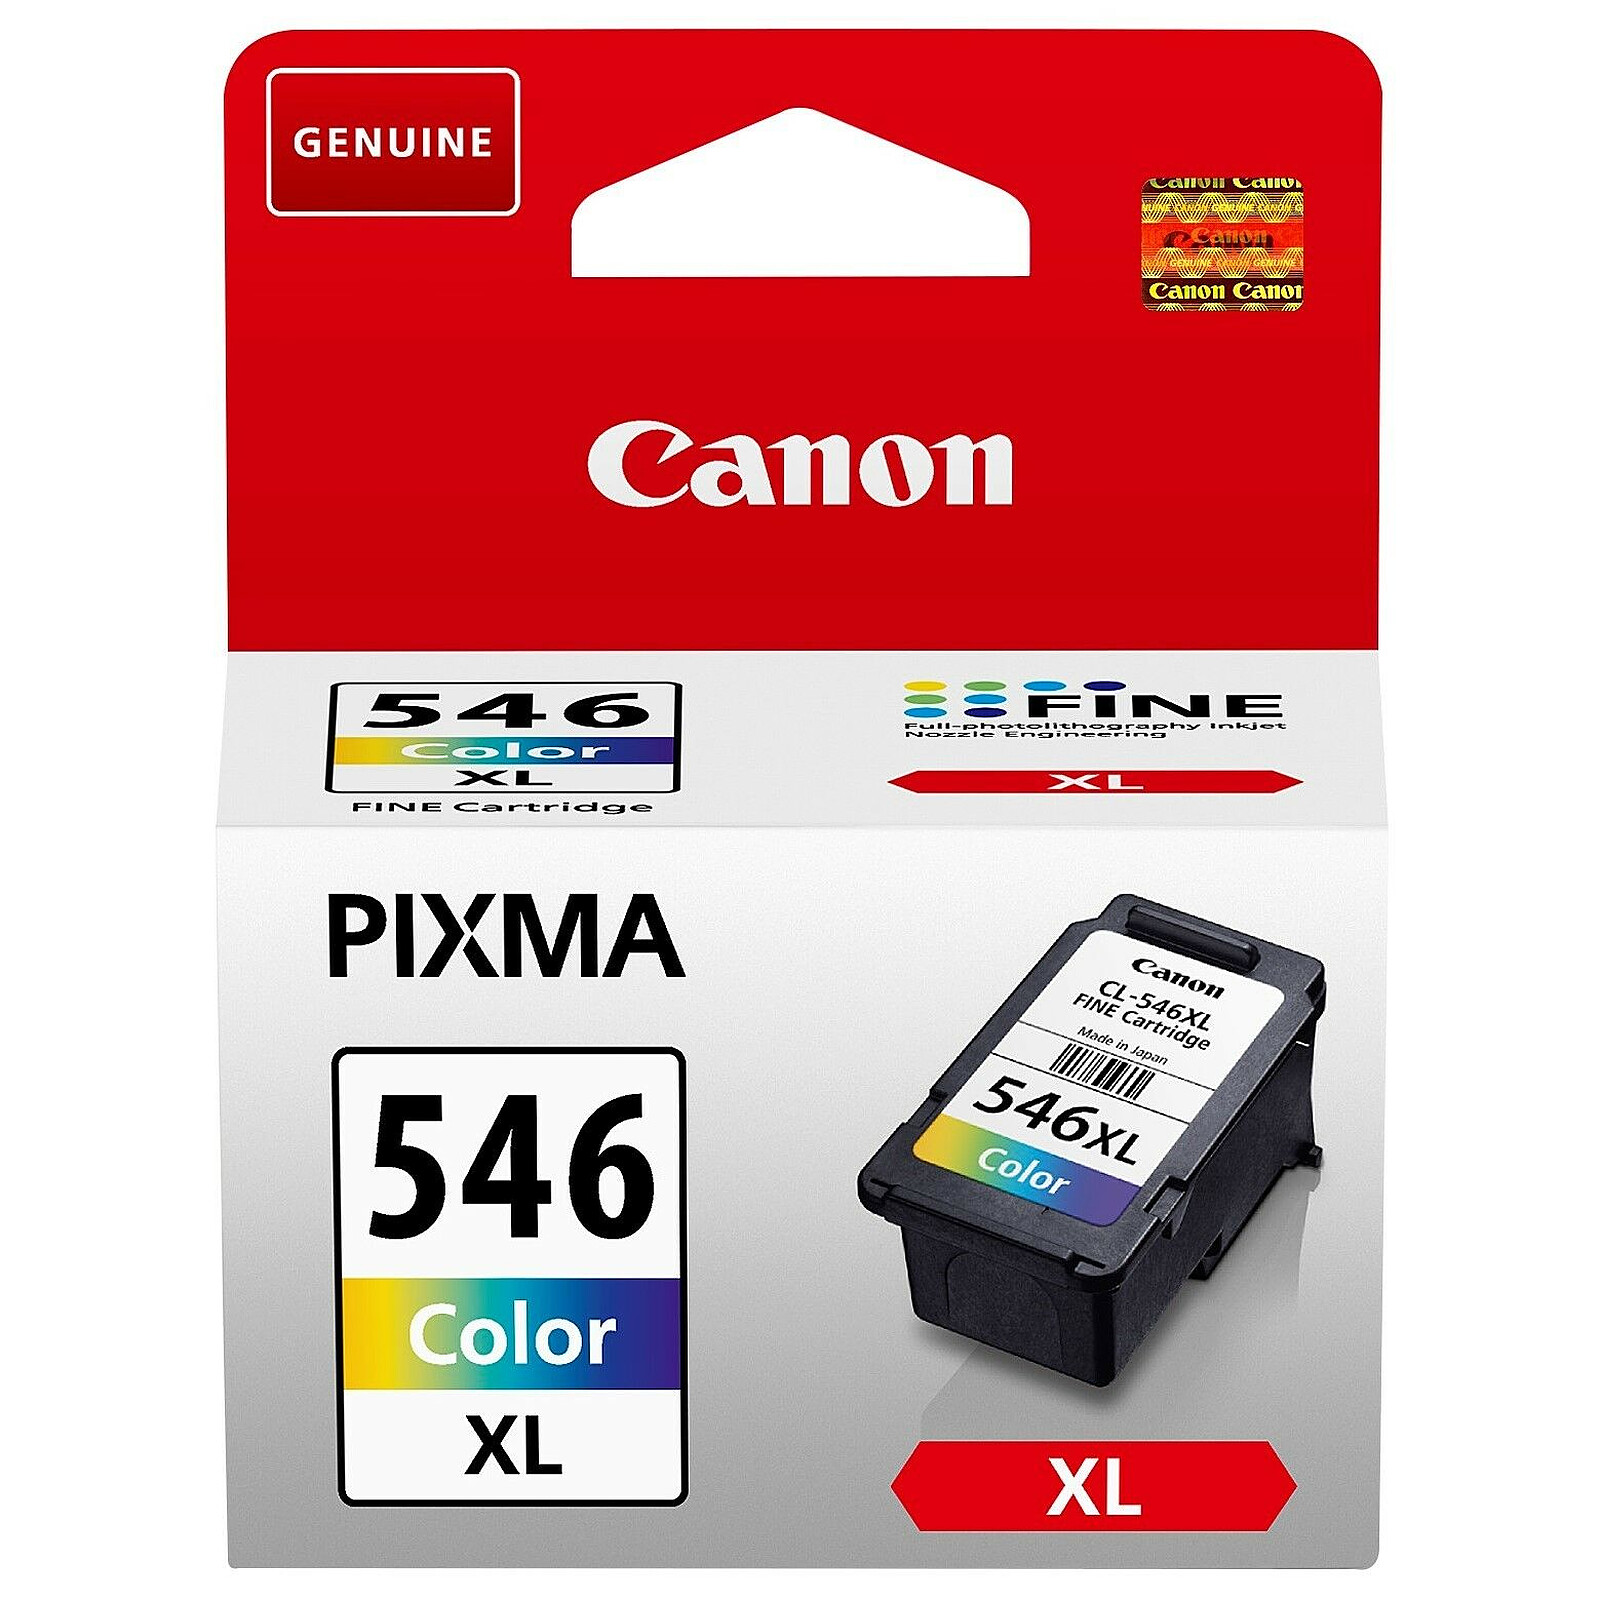 Canon CL-546 XL - Cartouche imprimante - LDLC